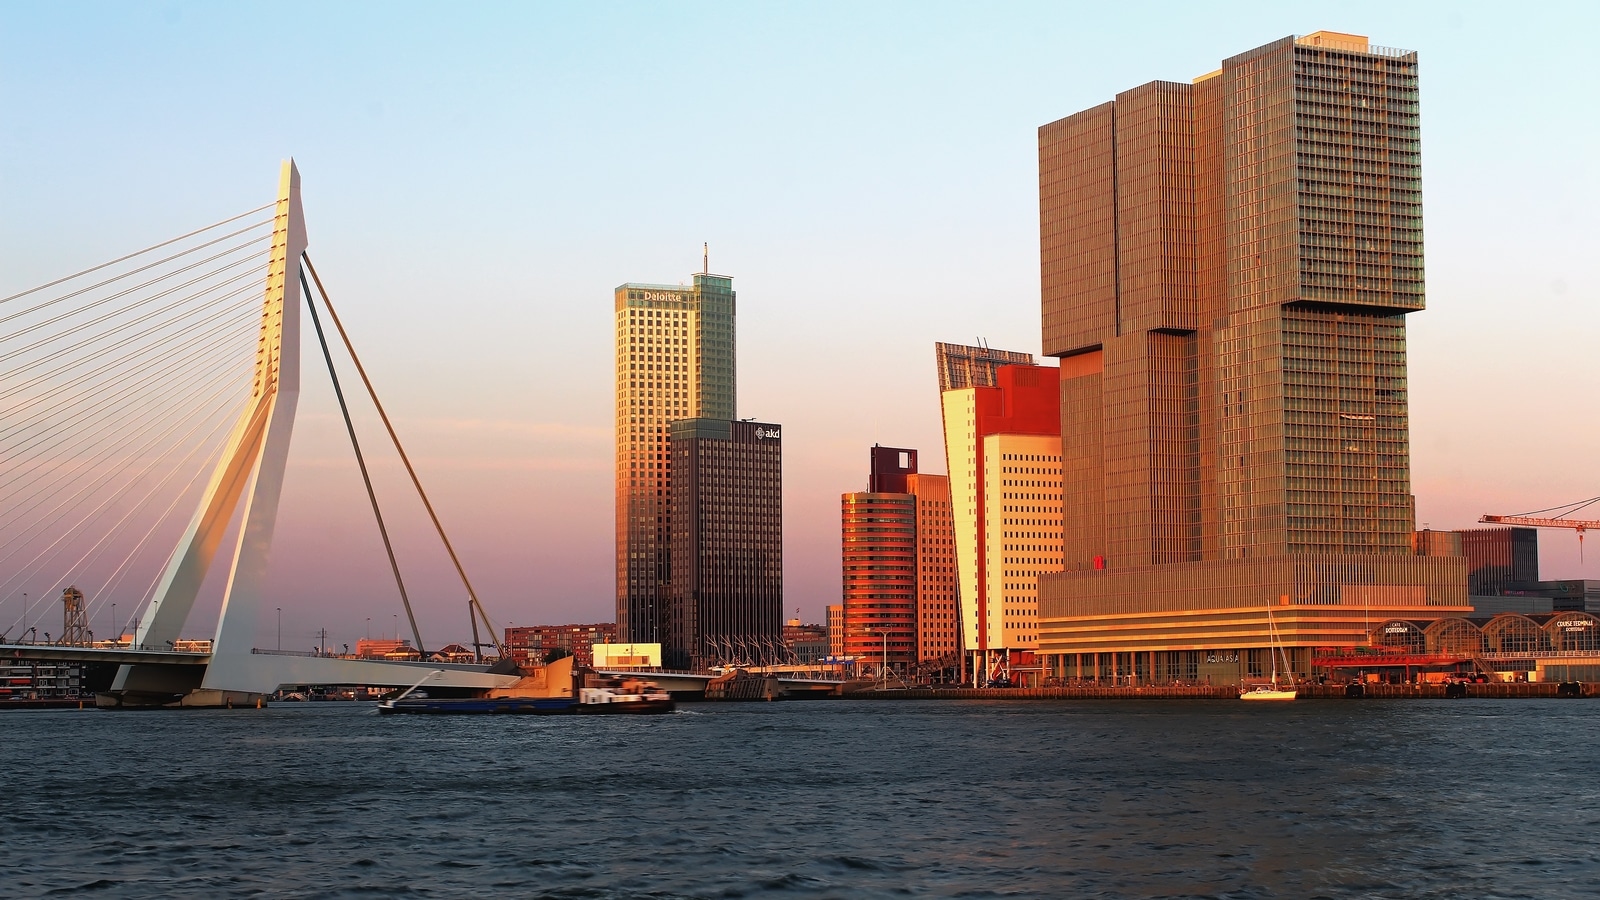 À Rotterdam, même les tours ressemblent à des conteneurs. Soucieux des moules et des
bigorneaux, les écologistes pourraient aussi défendre l’architecture traditionnelle de leur région. (c) Pixabay